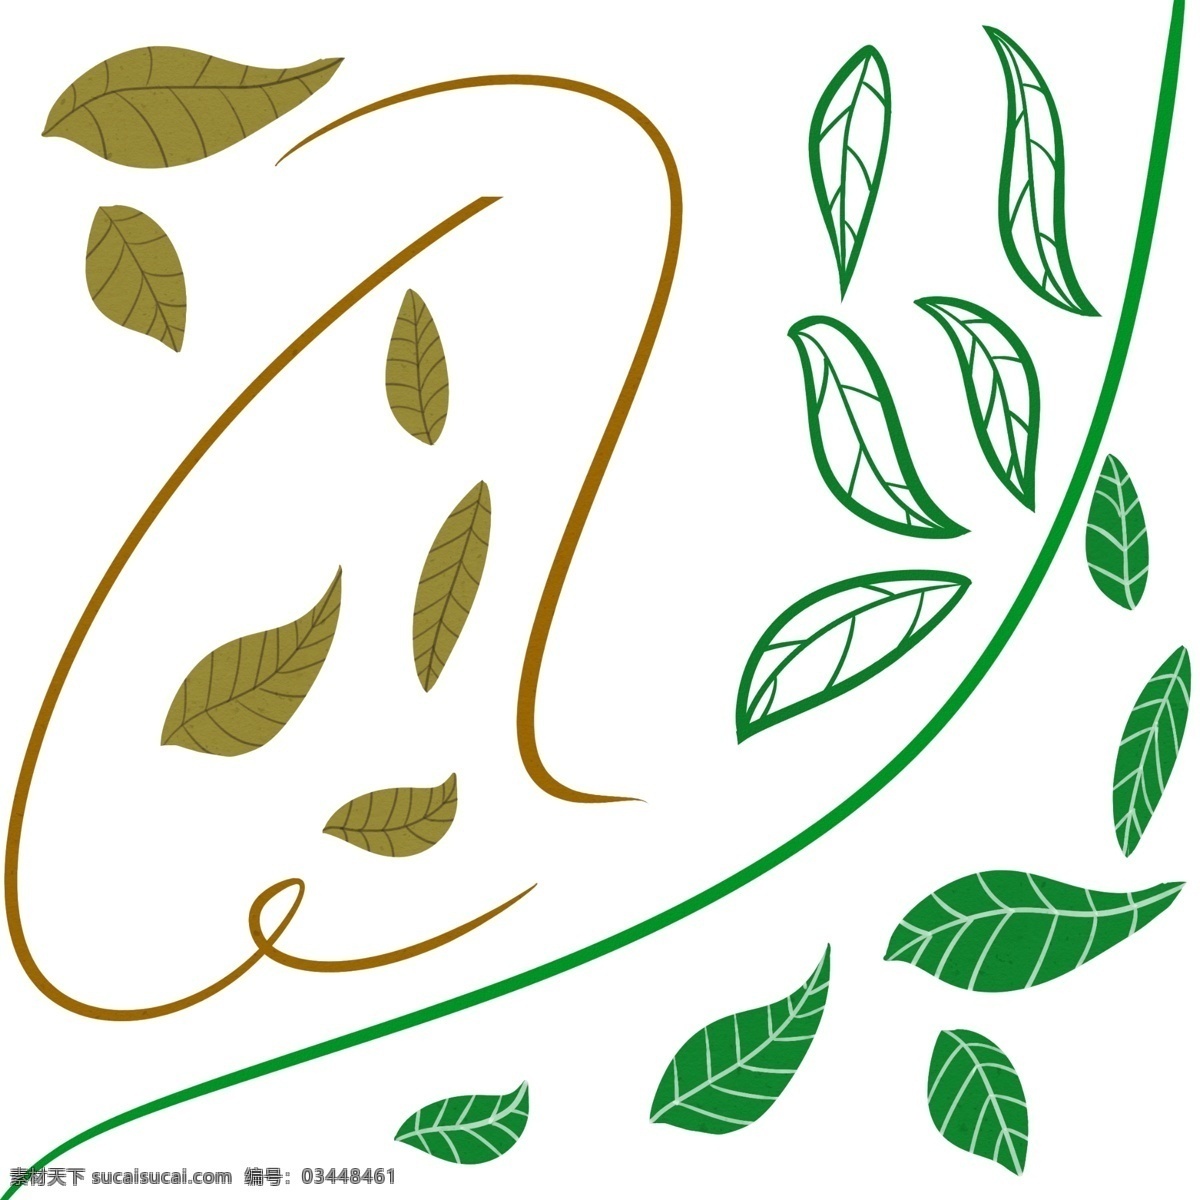 手绘 树叶 藤蔓 元素 任意 调色 组合 手绘树叶 树叶藤蔓 装饰边框 绿叶